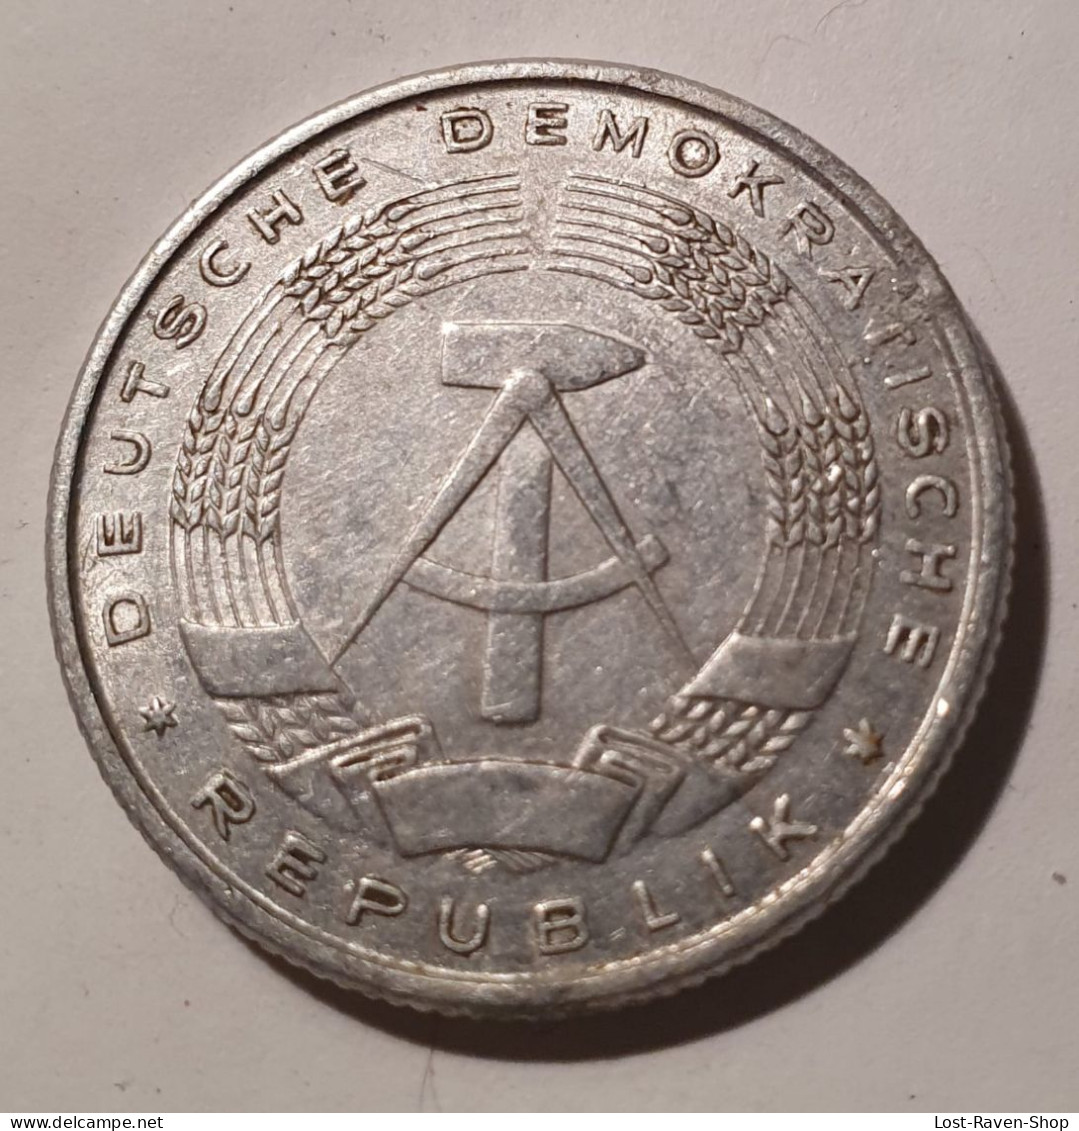 2 Deutsche Mark - 1957 - 2 Mark